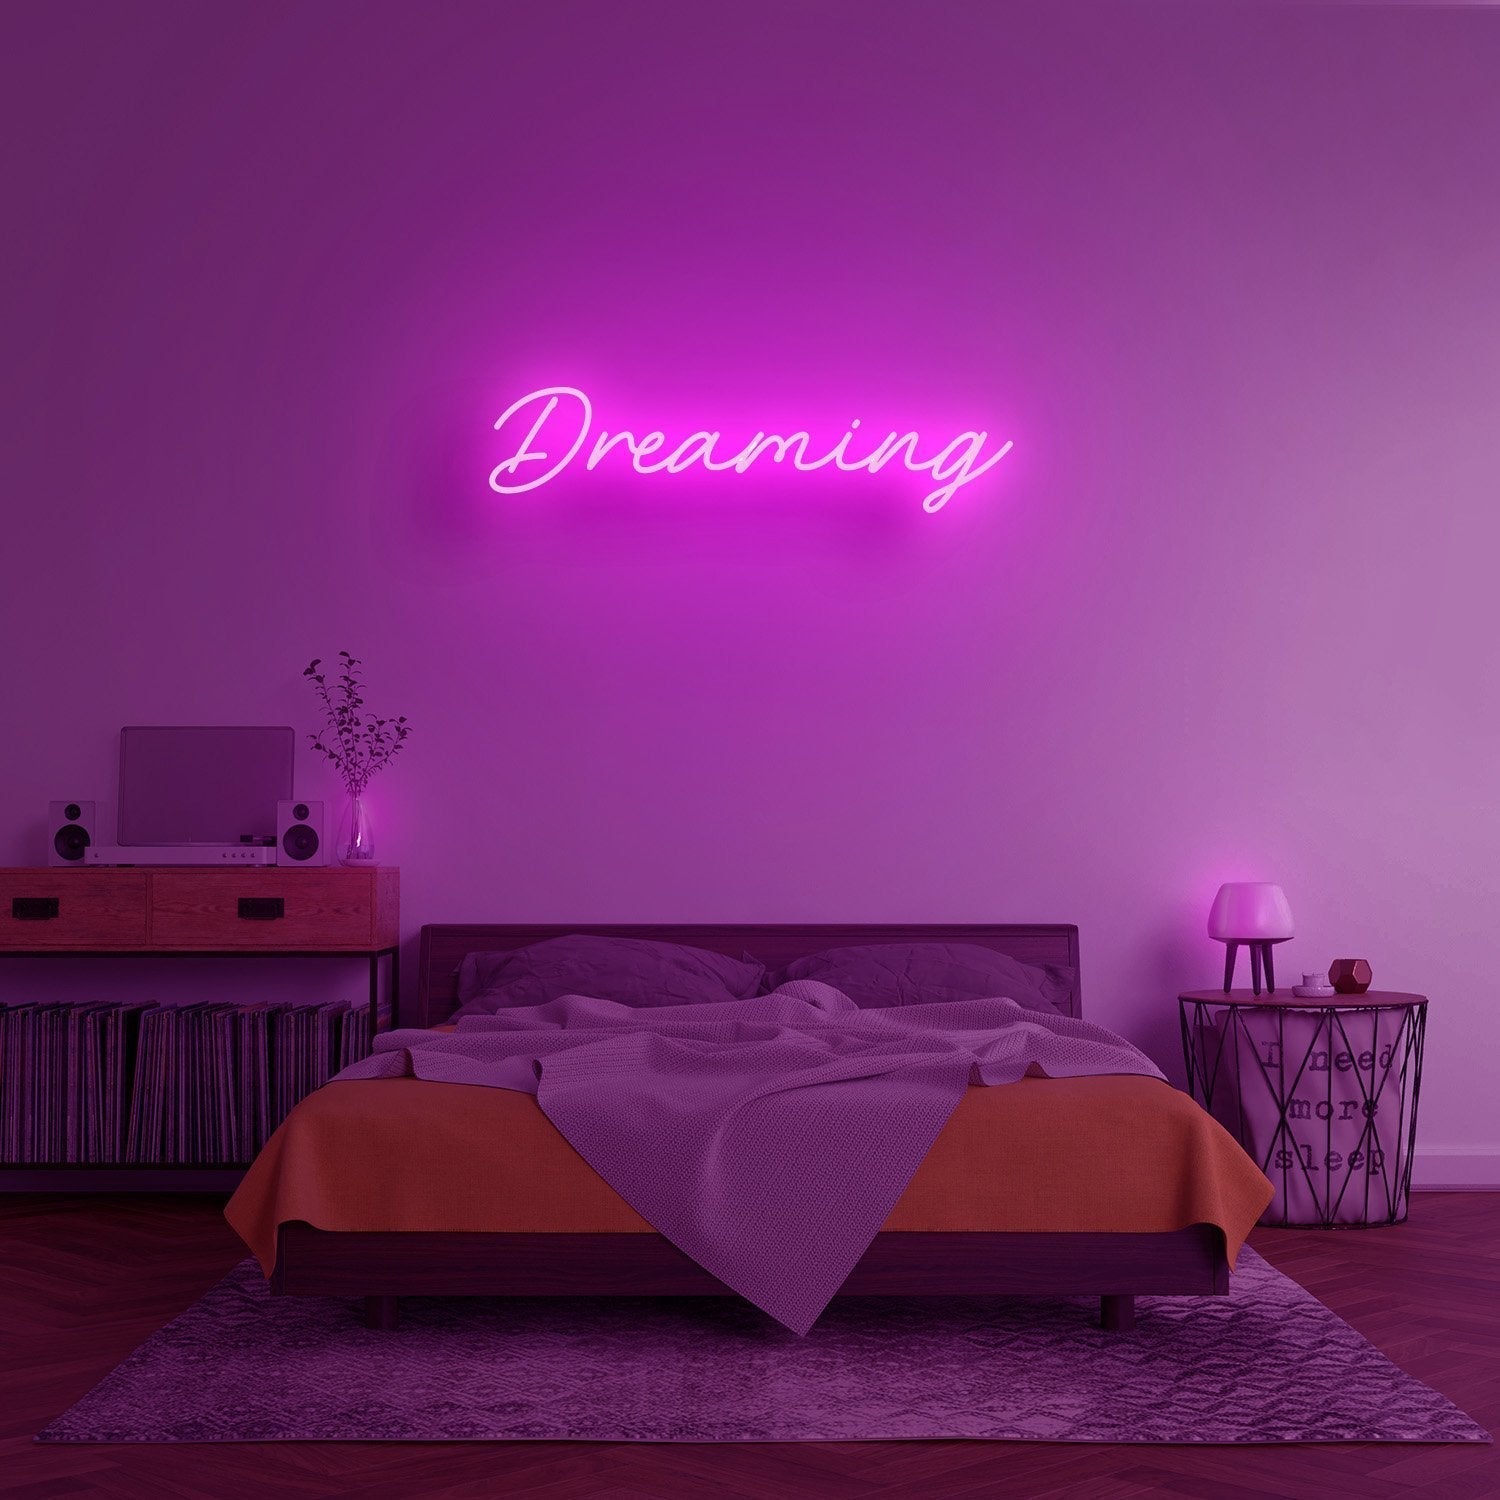 Dreaming Neon Sign - ZULIE E-COMMERCE LLC DBA LIT LAMP